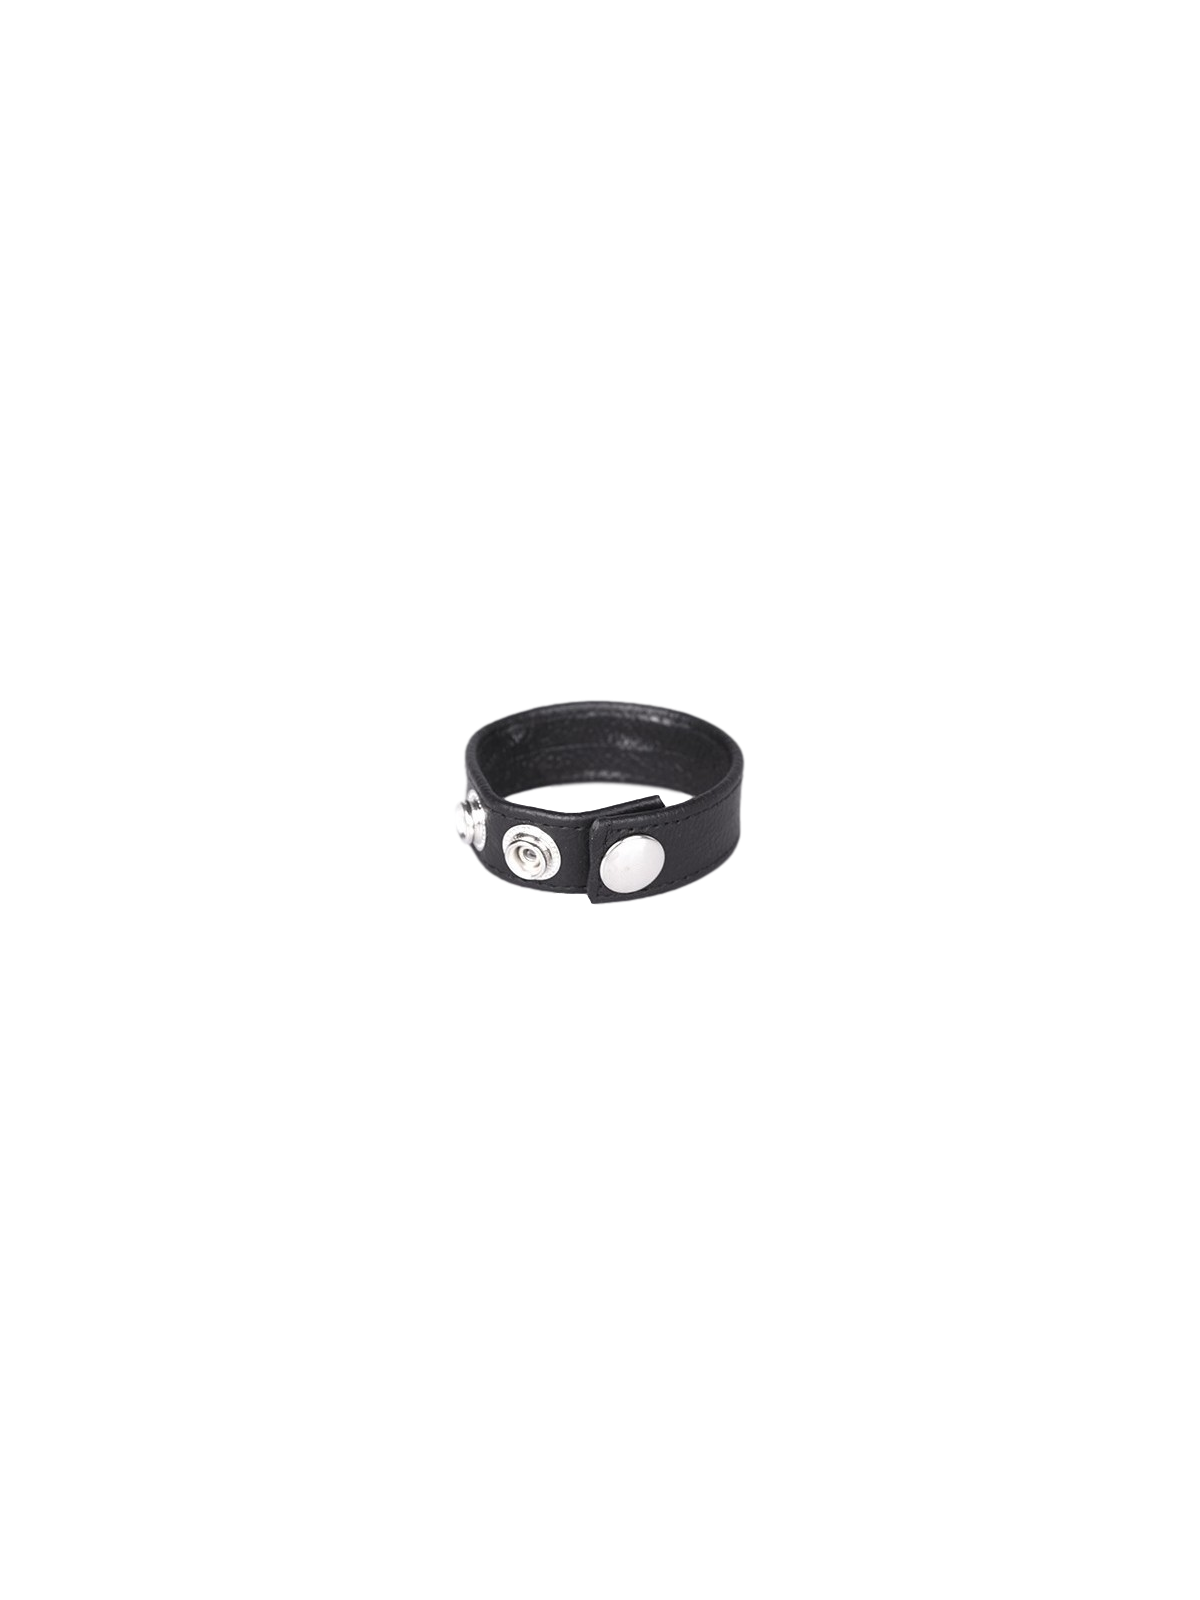 imports Anneau Pénien Cuir Noir 3 Pressions Cet anneau pénien noir est réalisé en cuir. Il est composé de 3 boutons pressions en